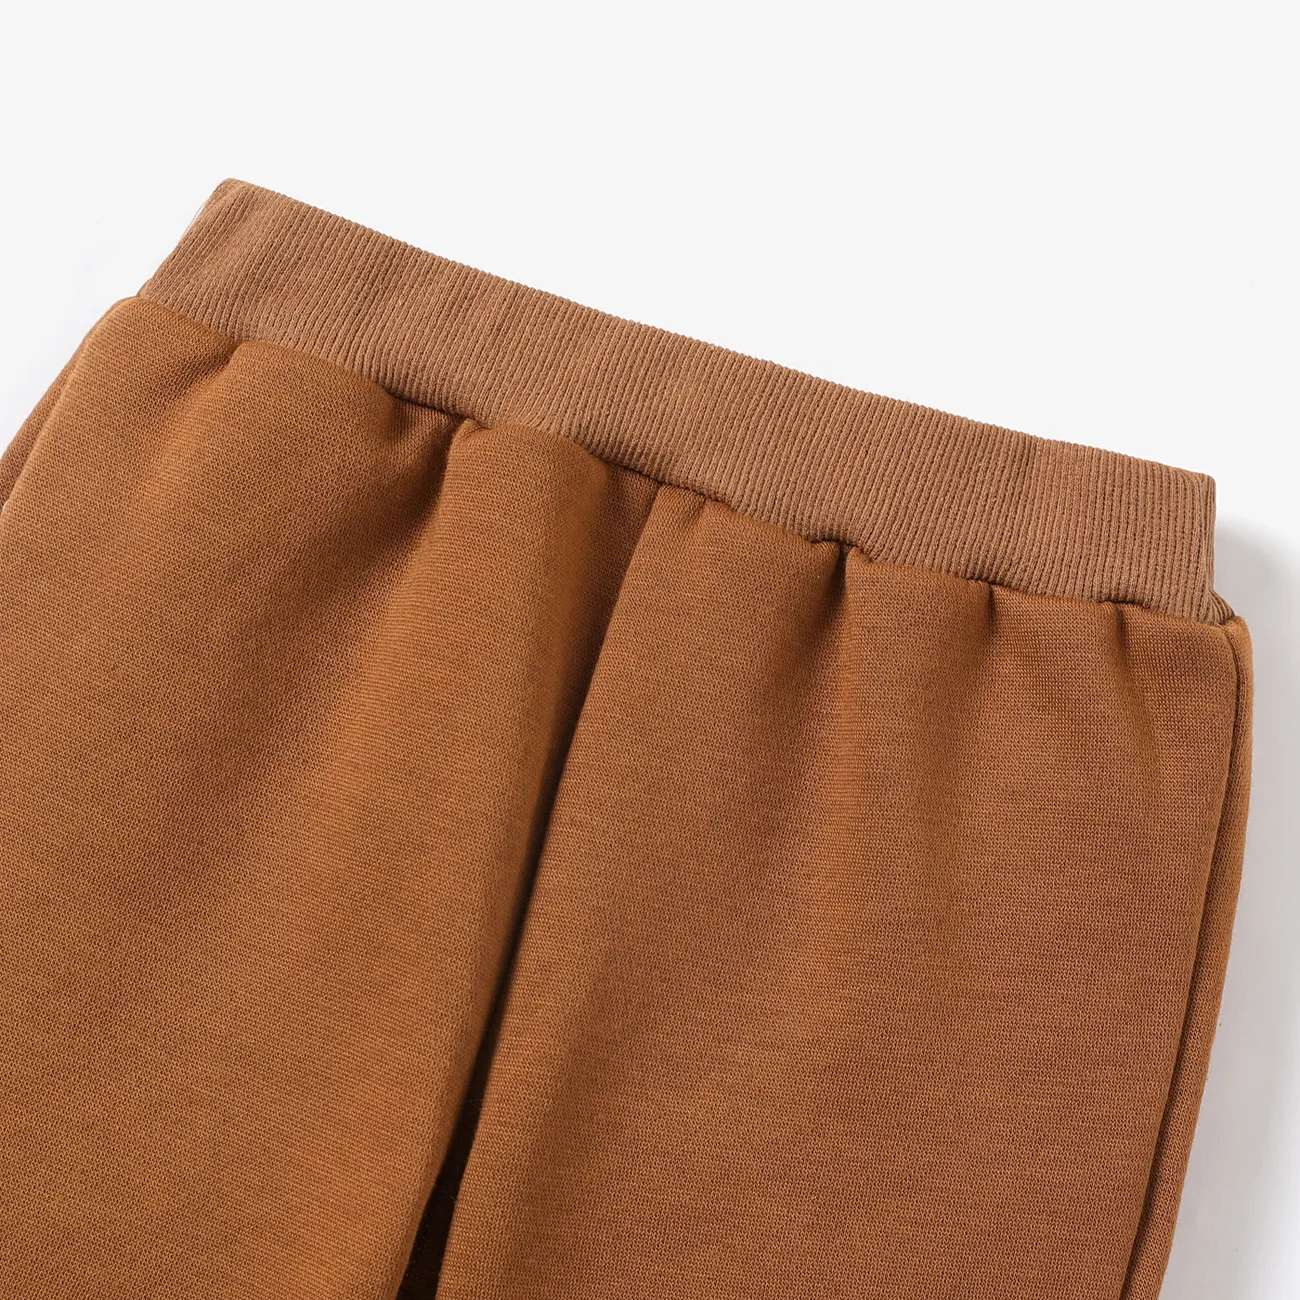 Toddler Boy Basic Solid Color Fleece Lined Elasticized Pants Brown big image 1